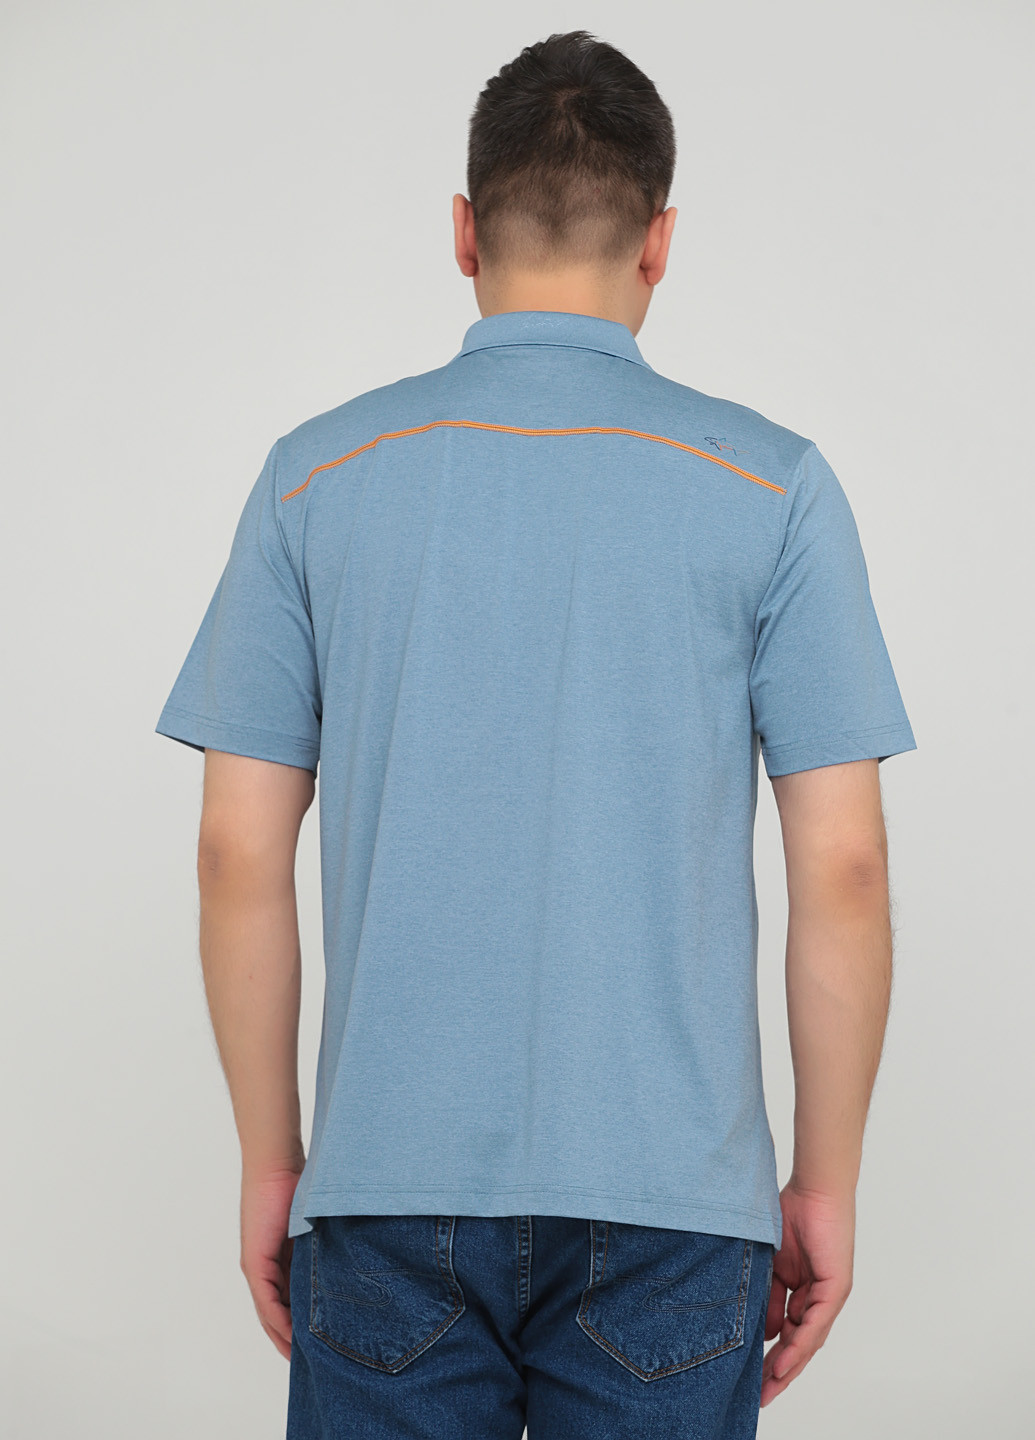 Темно-голубой футболка-поло для мужчин Greg Norman с абстрактным узором